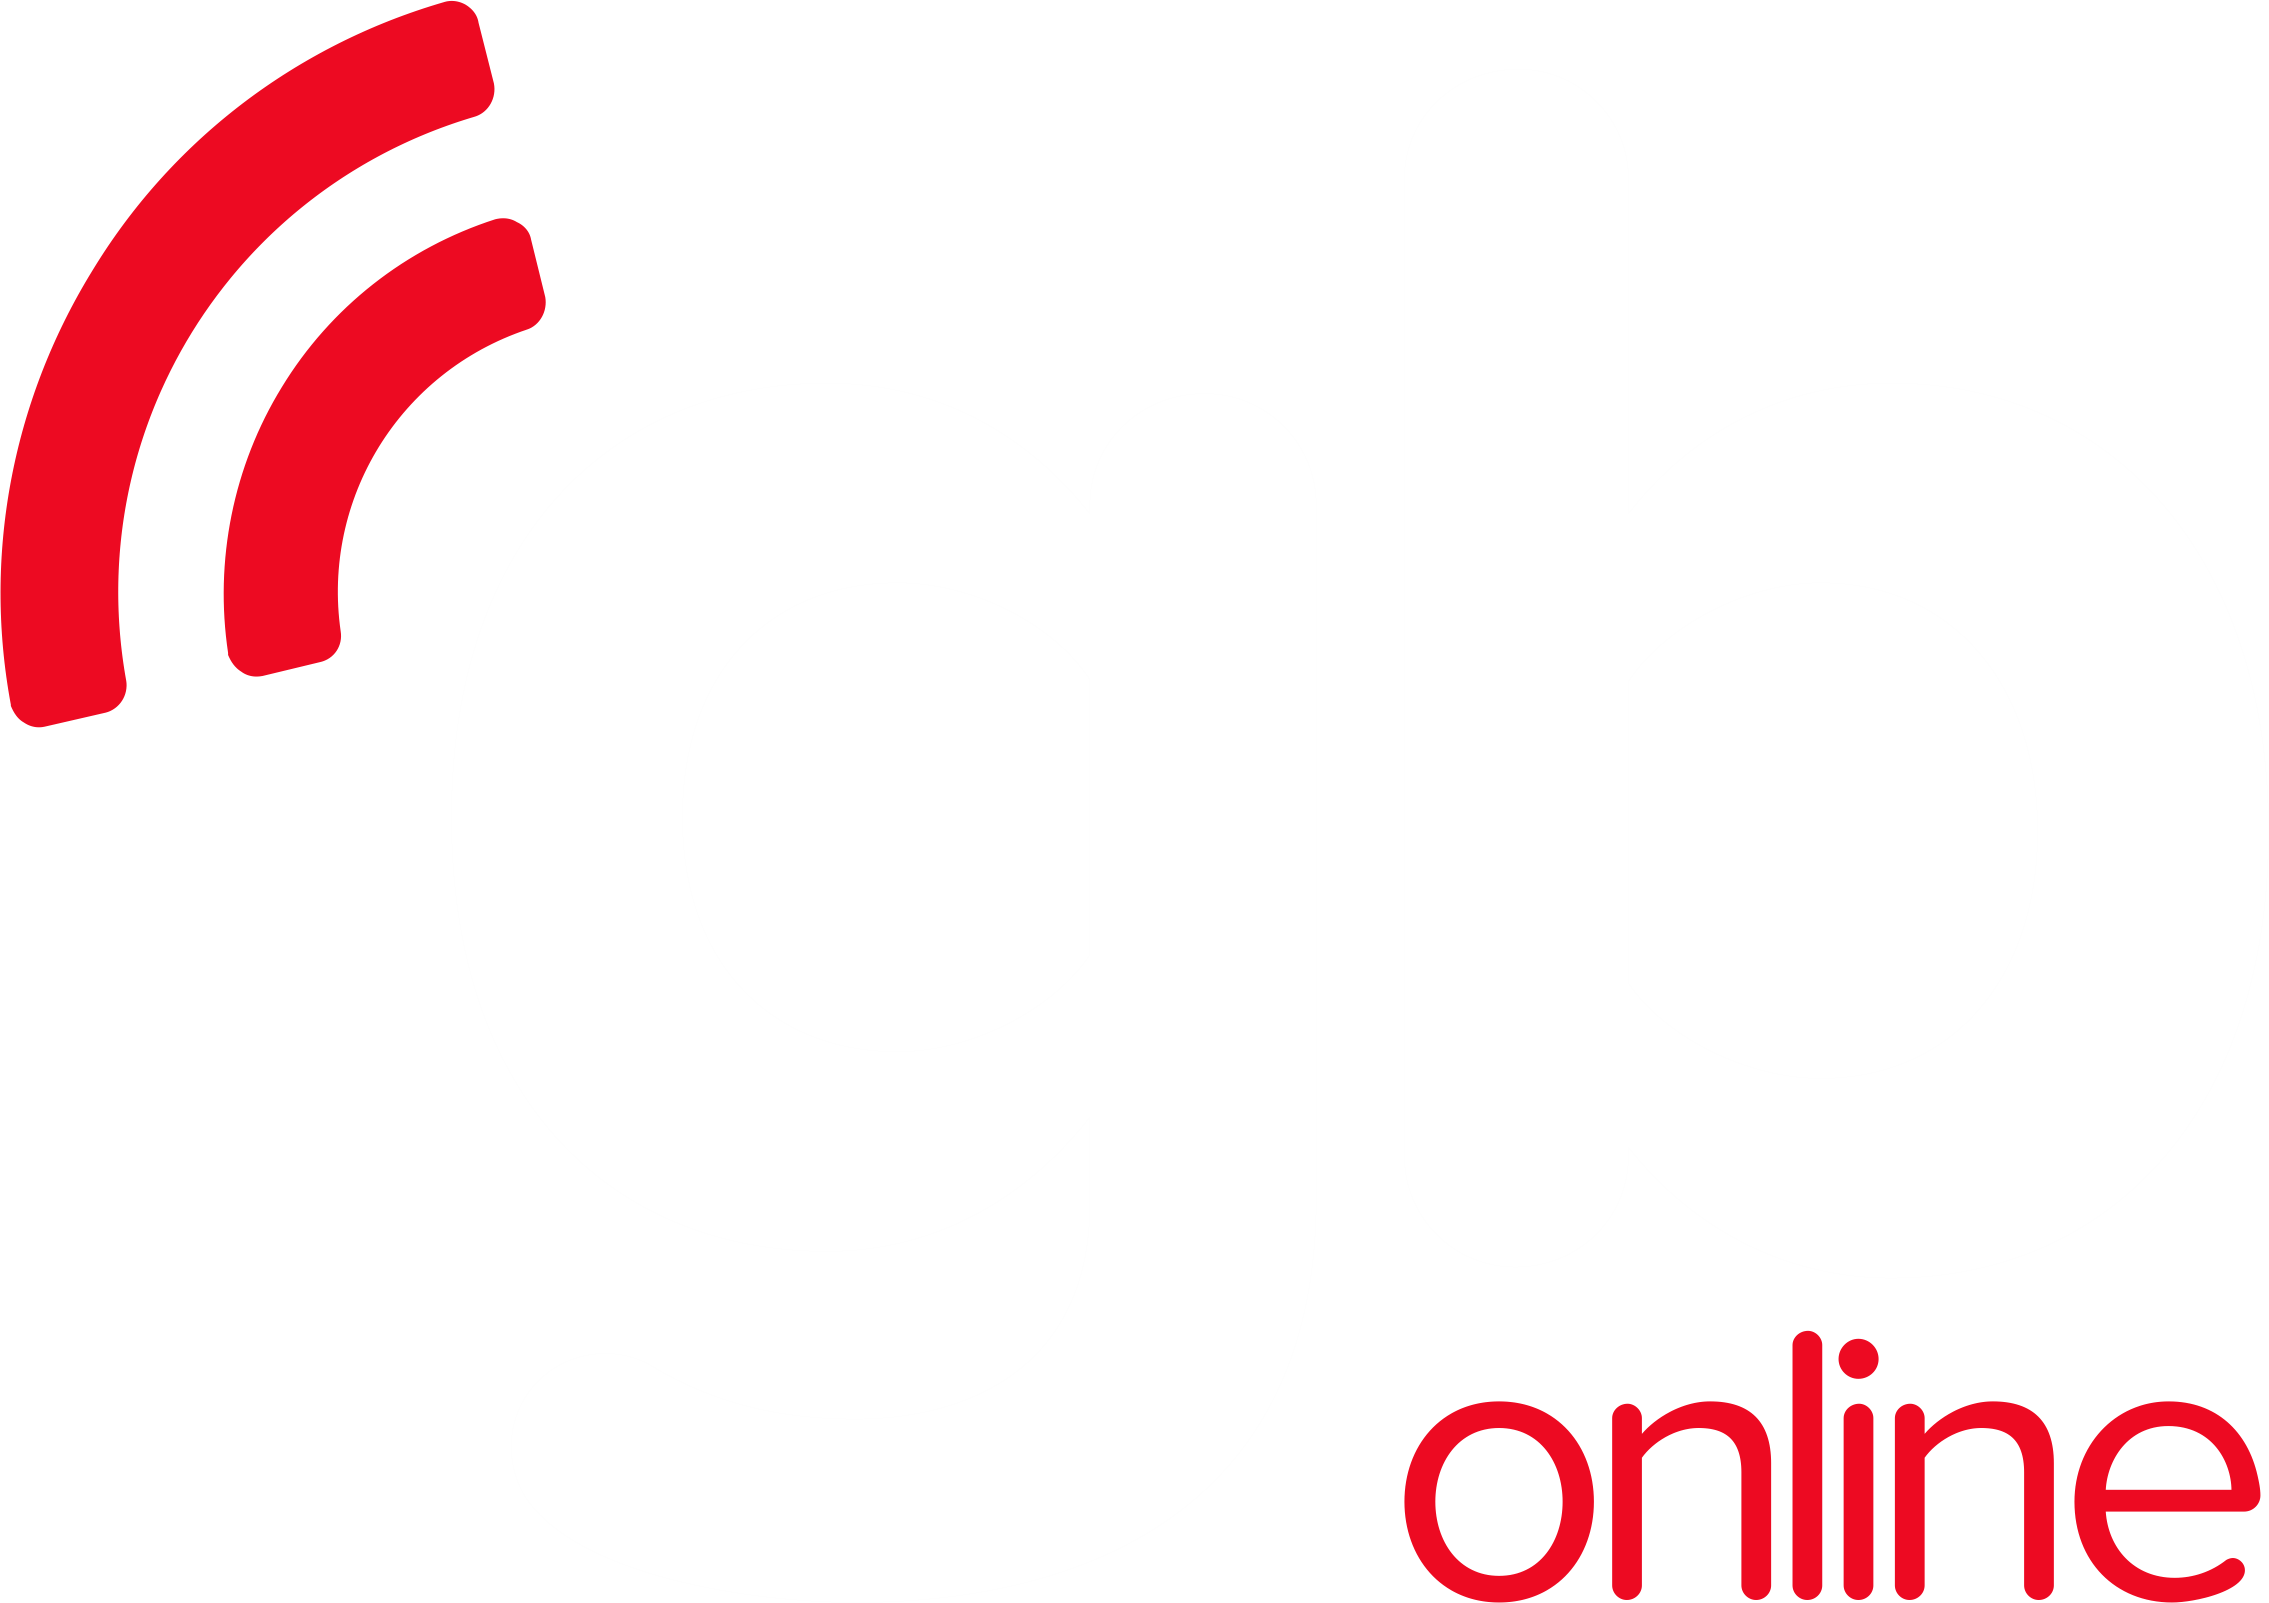 GB Online